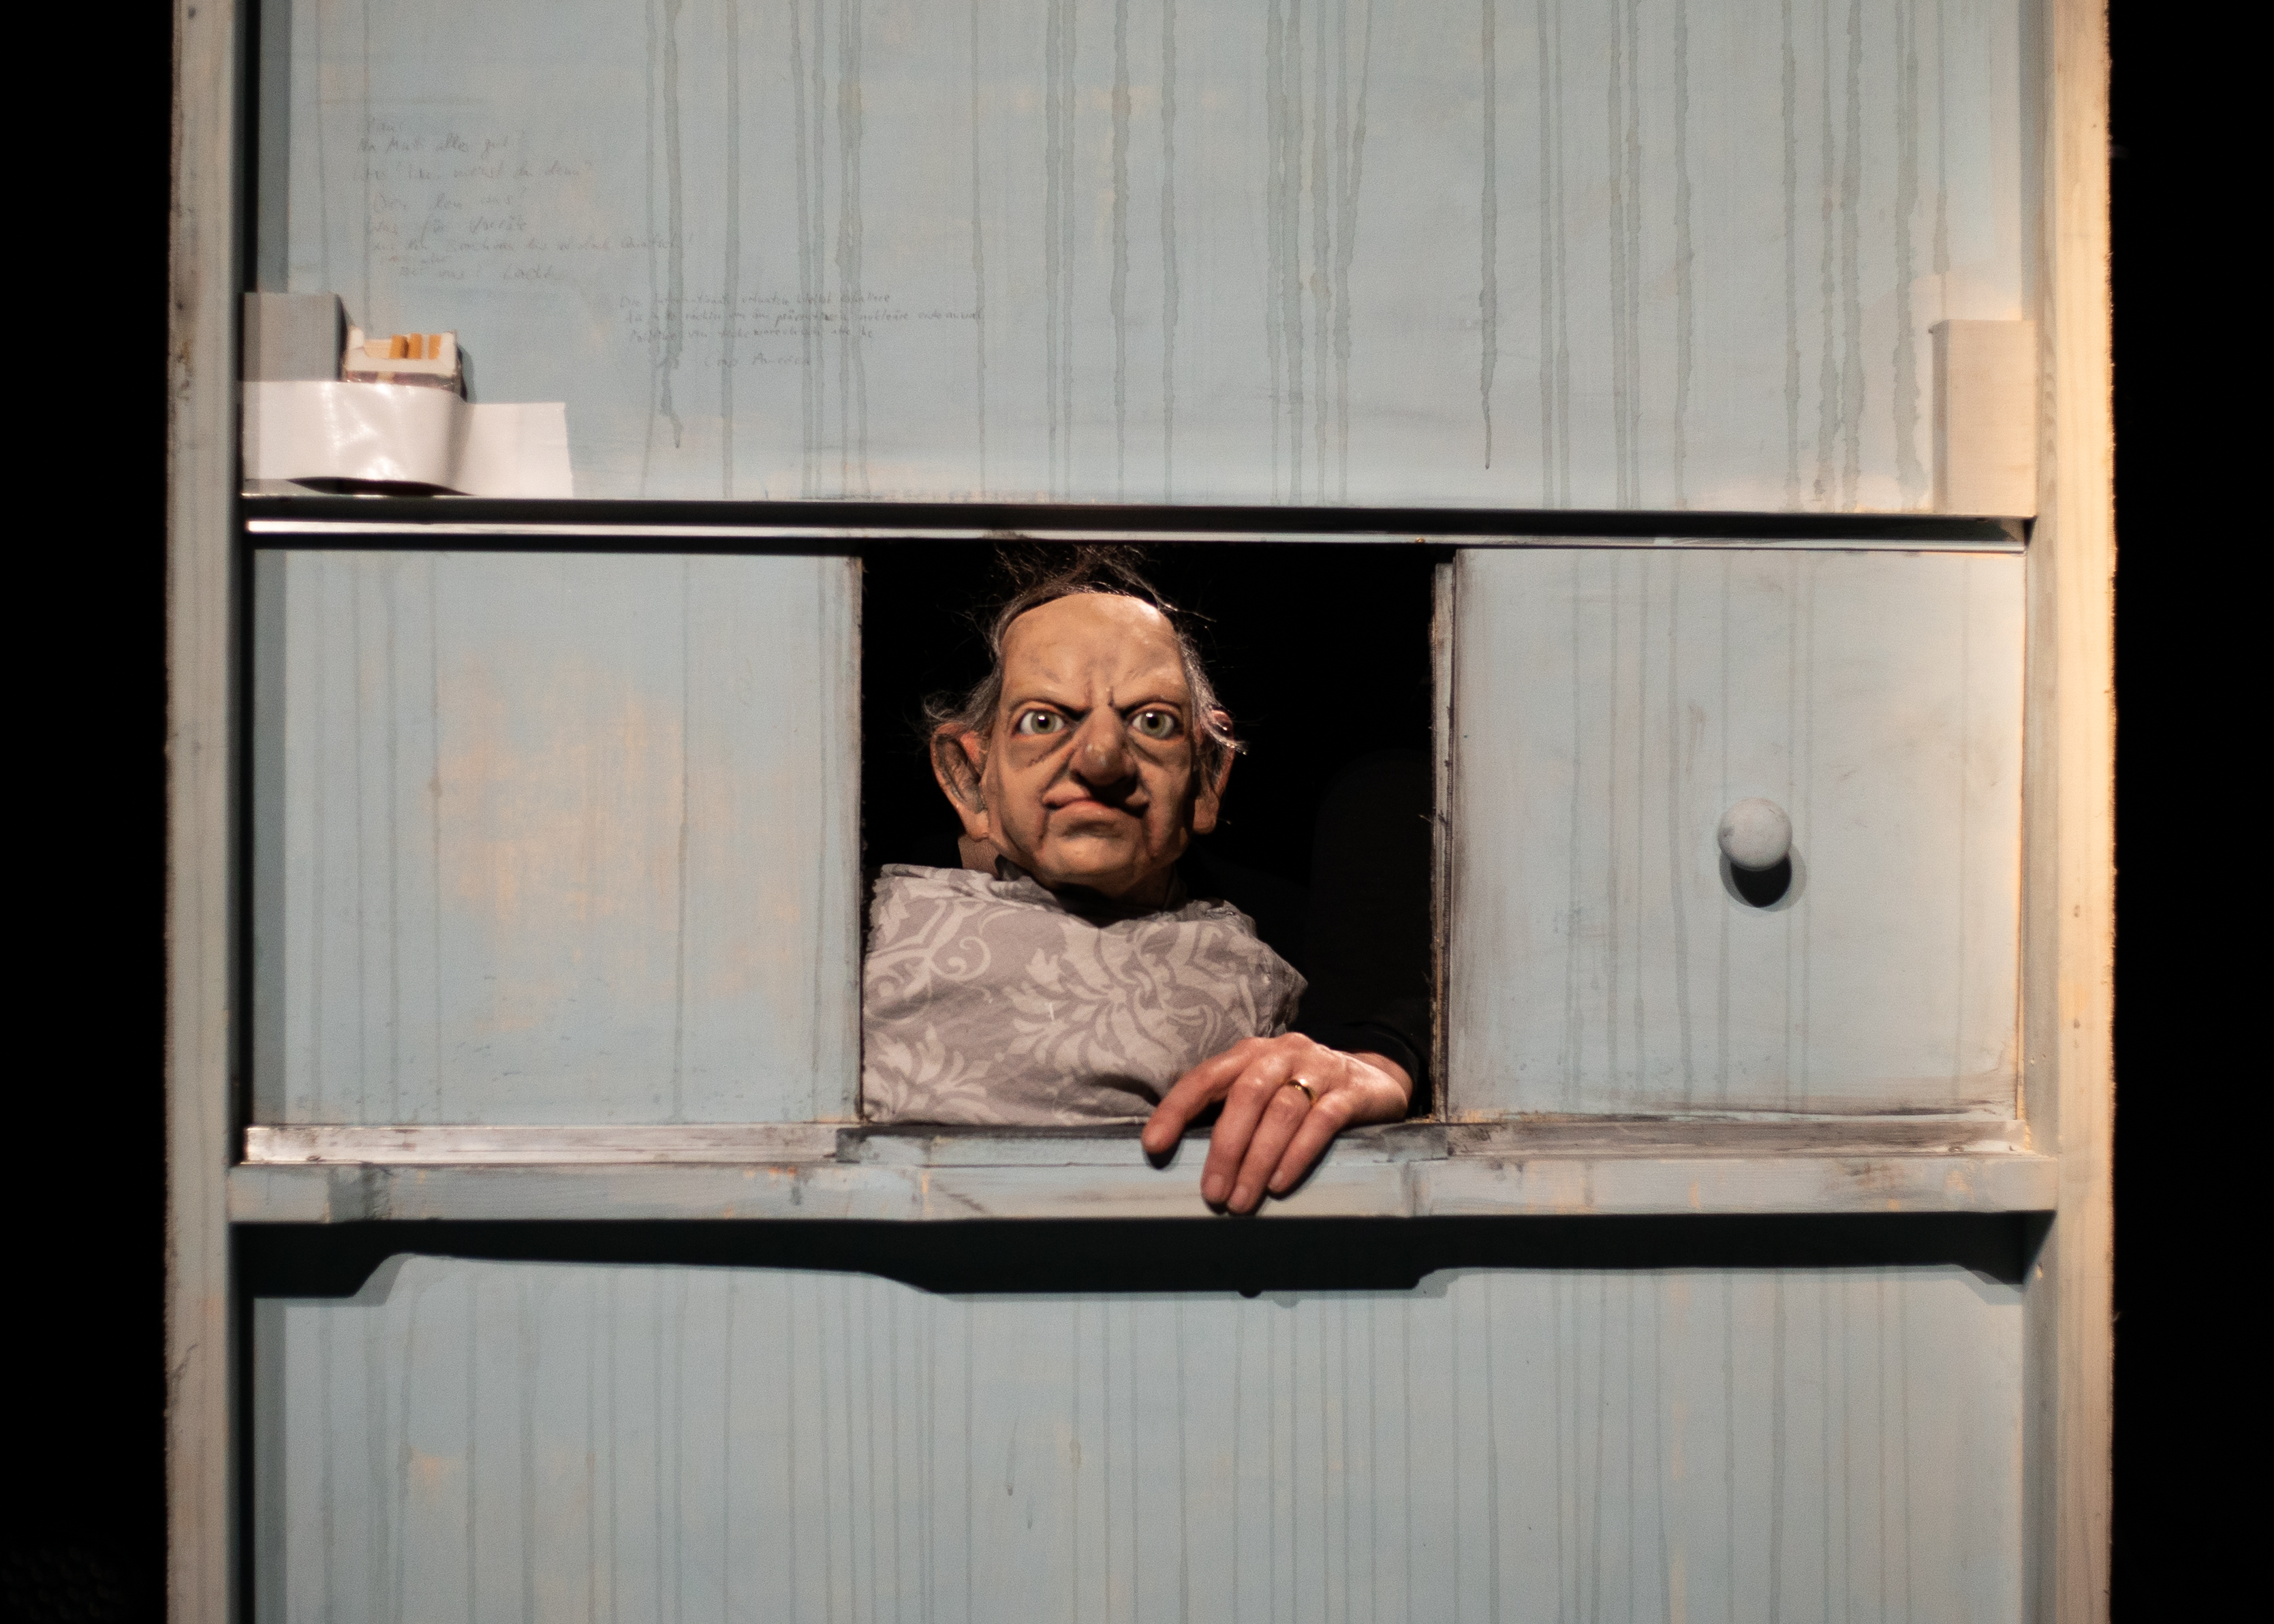 Die Puppe eines alten Mannes mit Halbglatze schaut aus dem Fenster Richtung Betrachter. Er stützt sich mit einer Hand auf dem Fensterbrett ab.